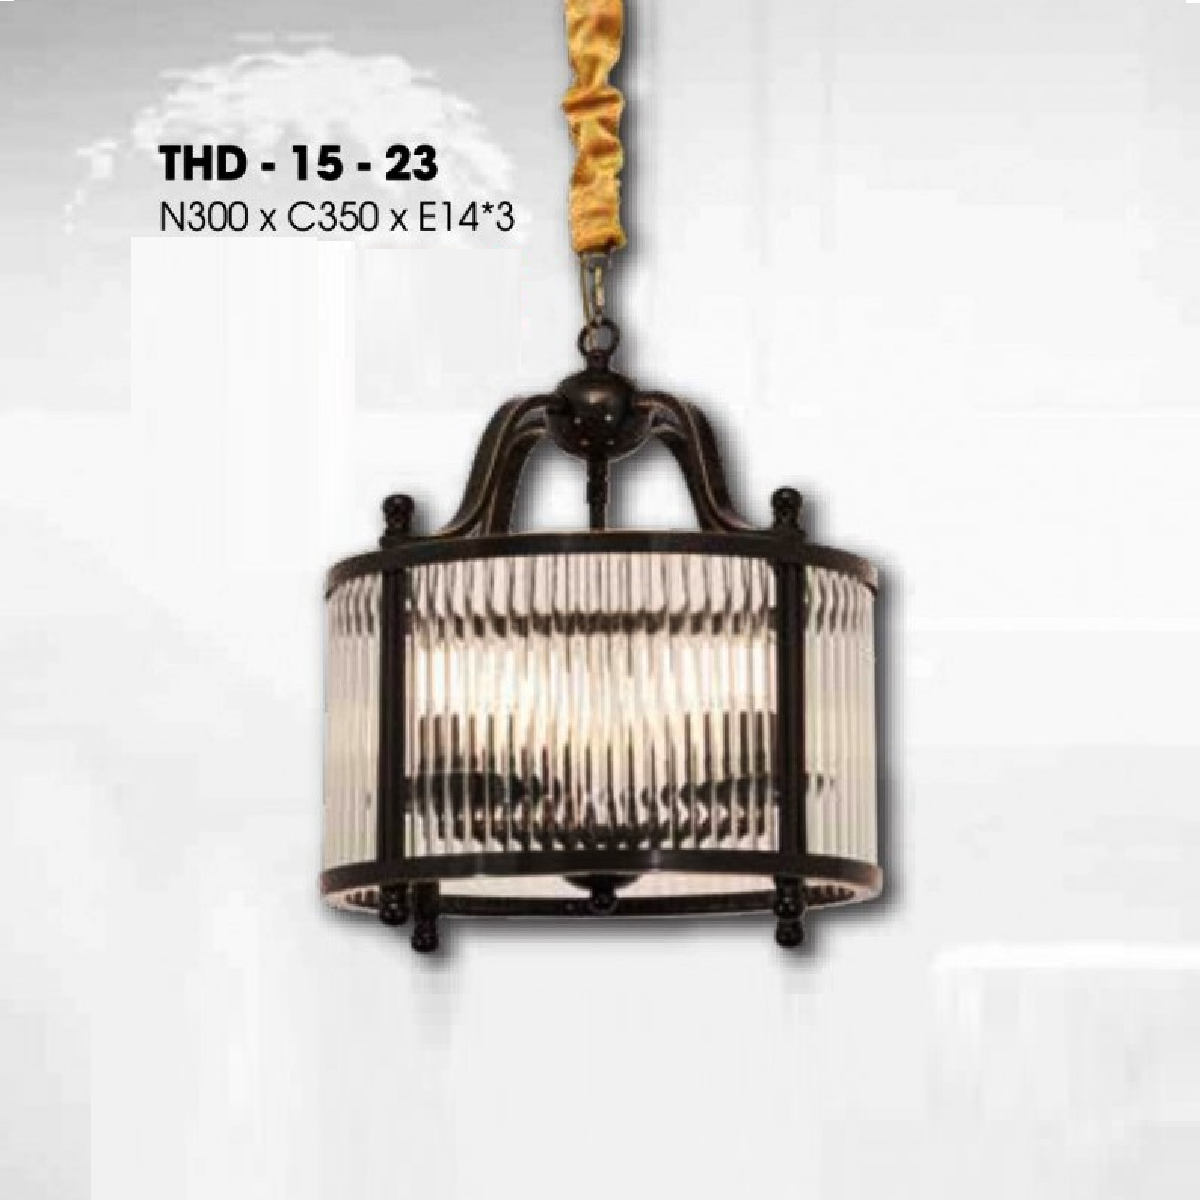 THD - 15 - 23: Đèn thả đơn xi mạ đồng ( đen) - KT: W300mm x H350mm - Bóng đèn E14 x 4 bóng